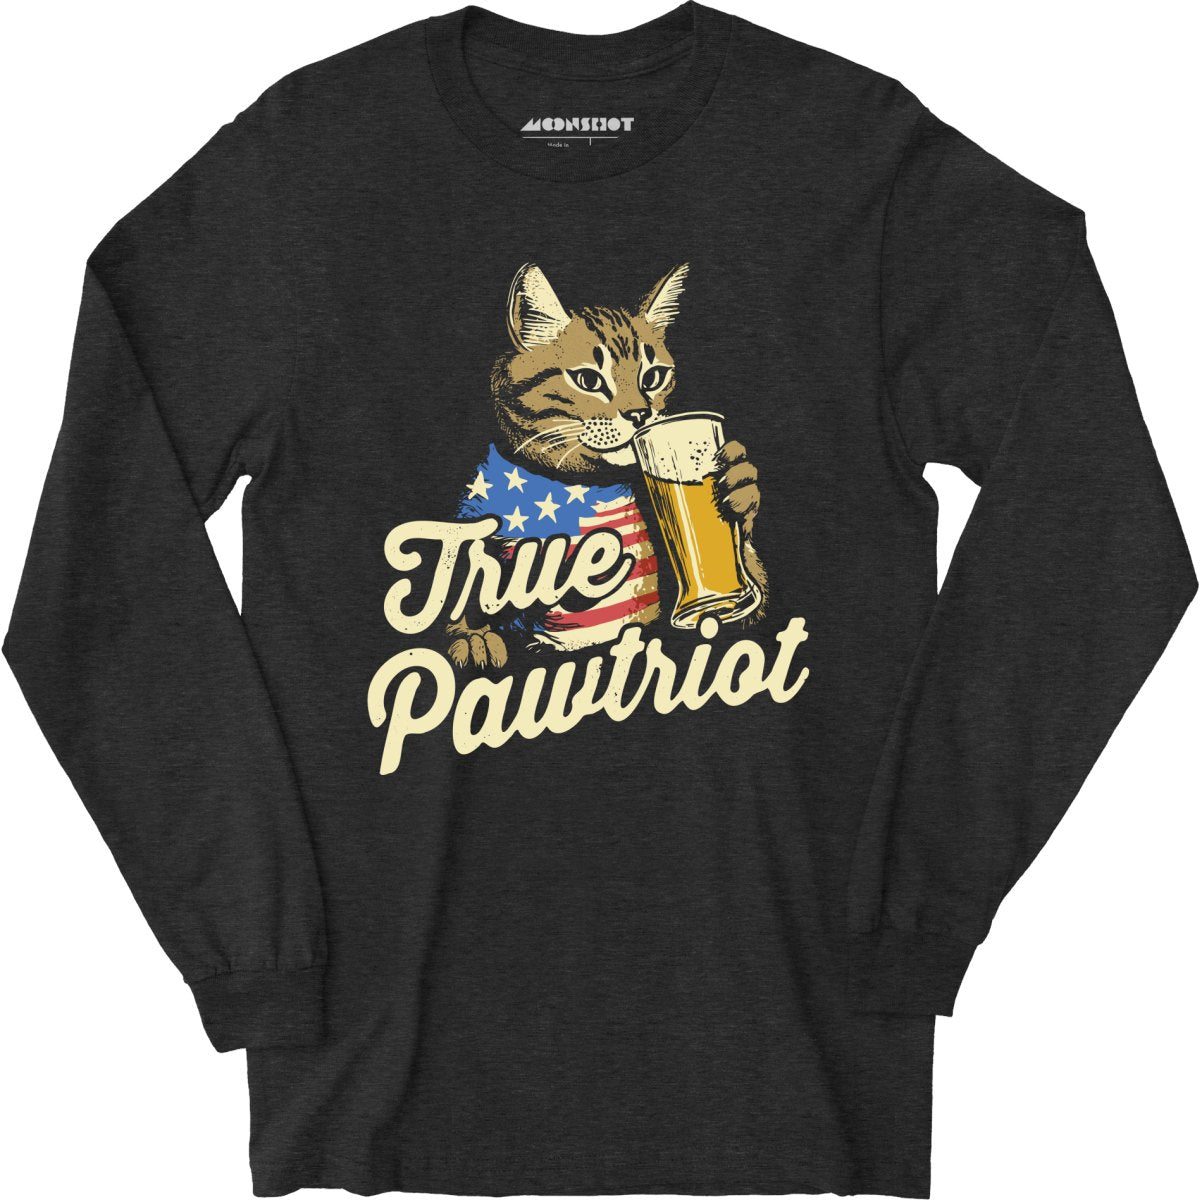 True Pawtriot - Long Sleeve T-Shirt